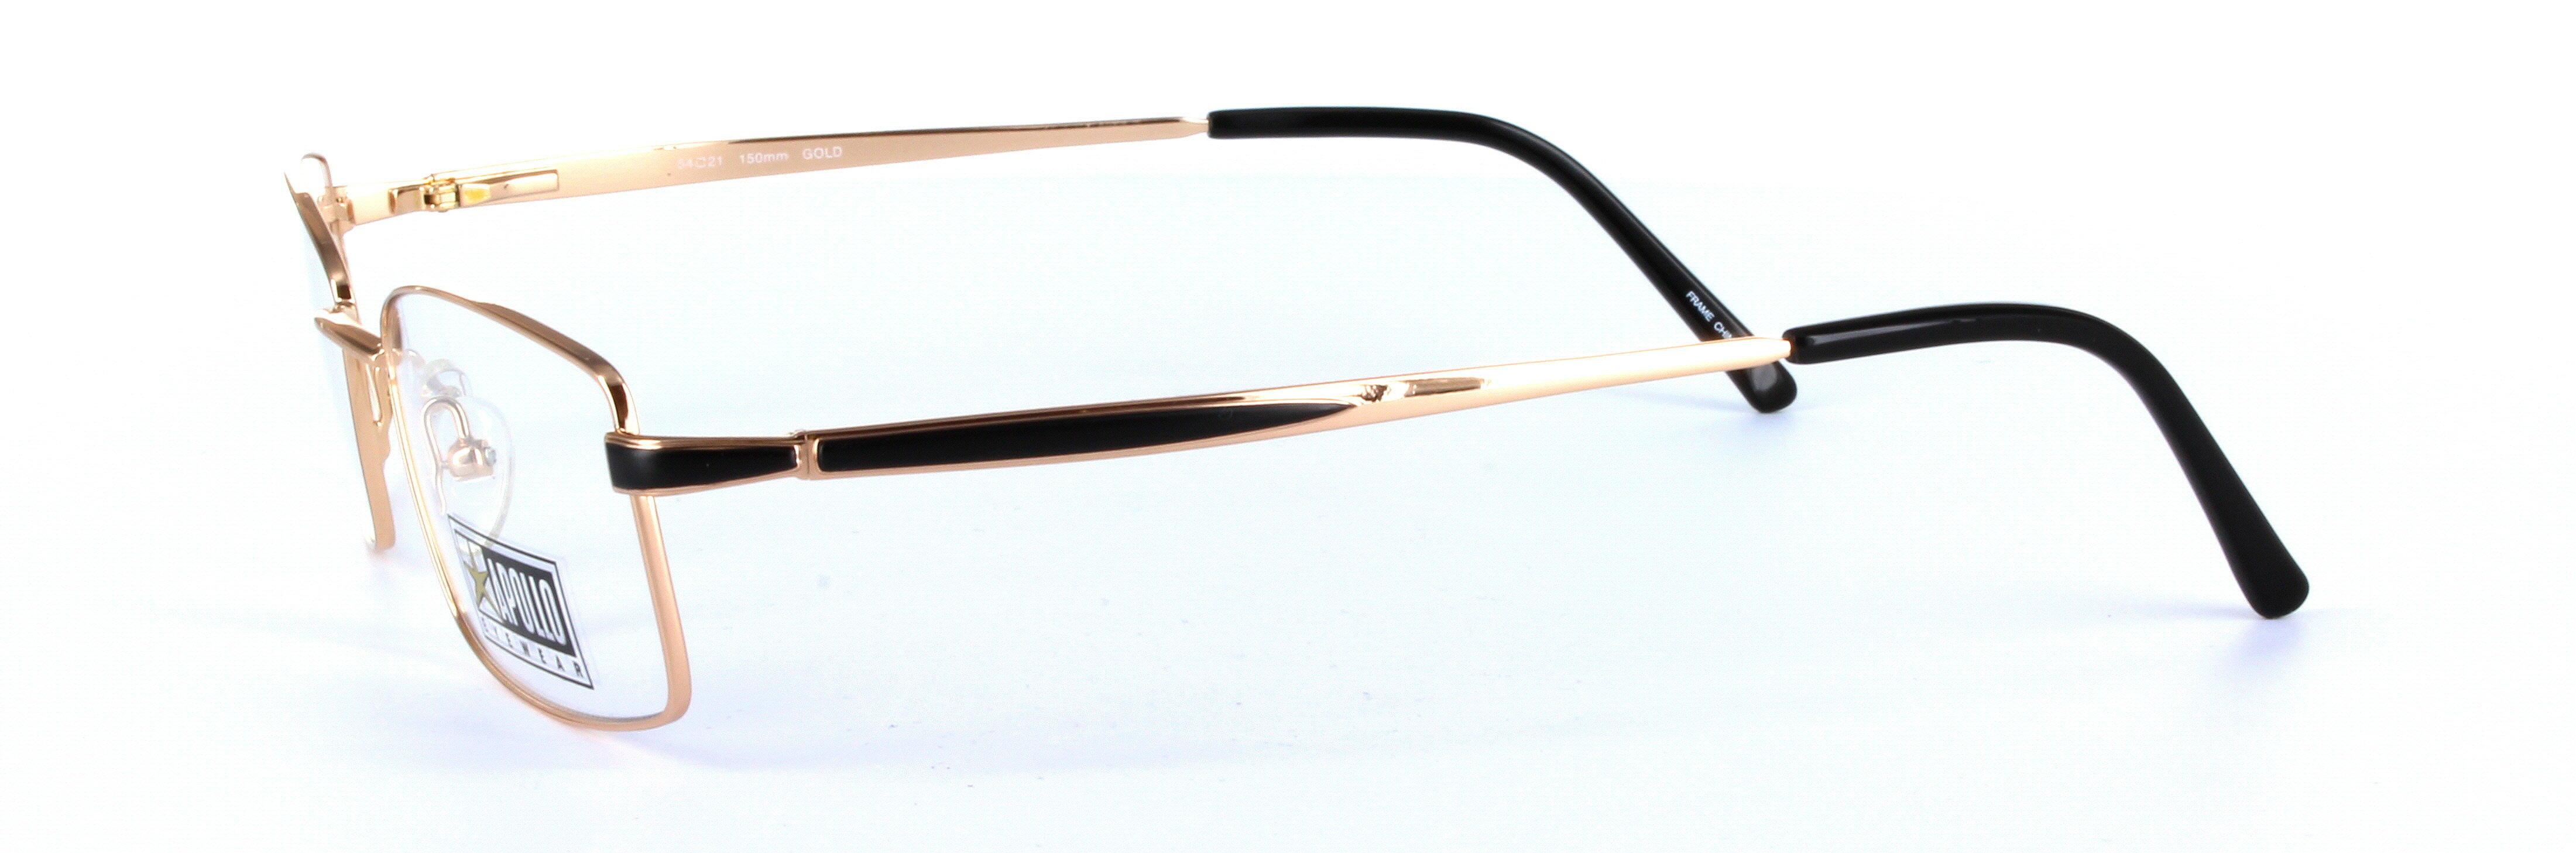 Gold Full Rim Rectangular Metal Glasses Chianti - Image View 2